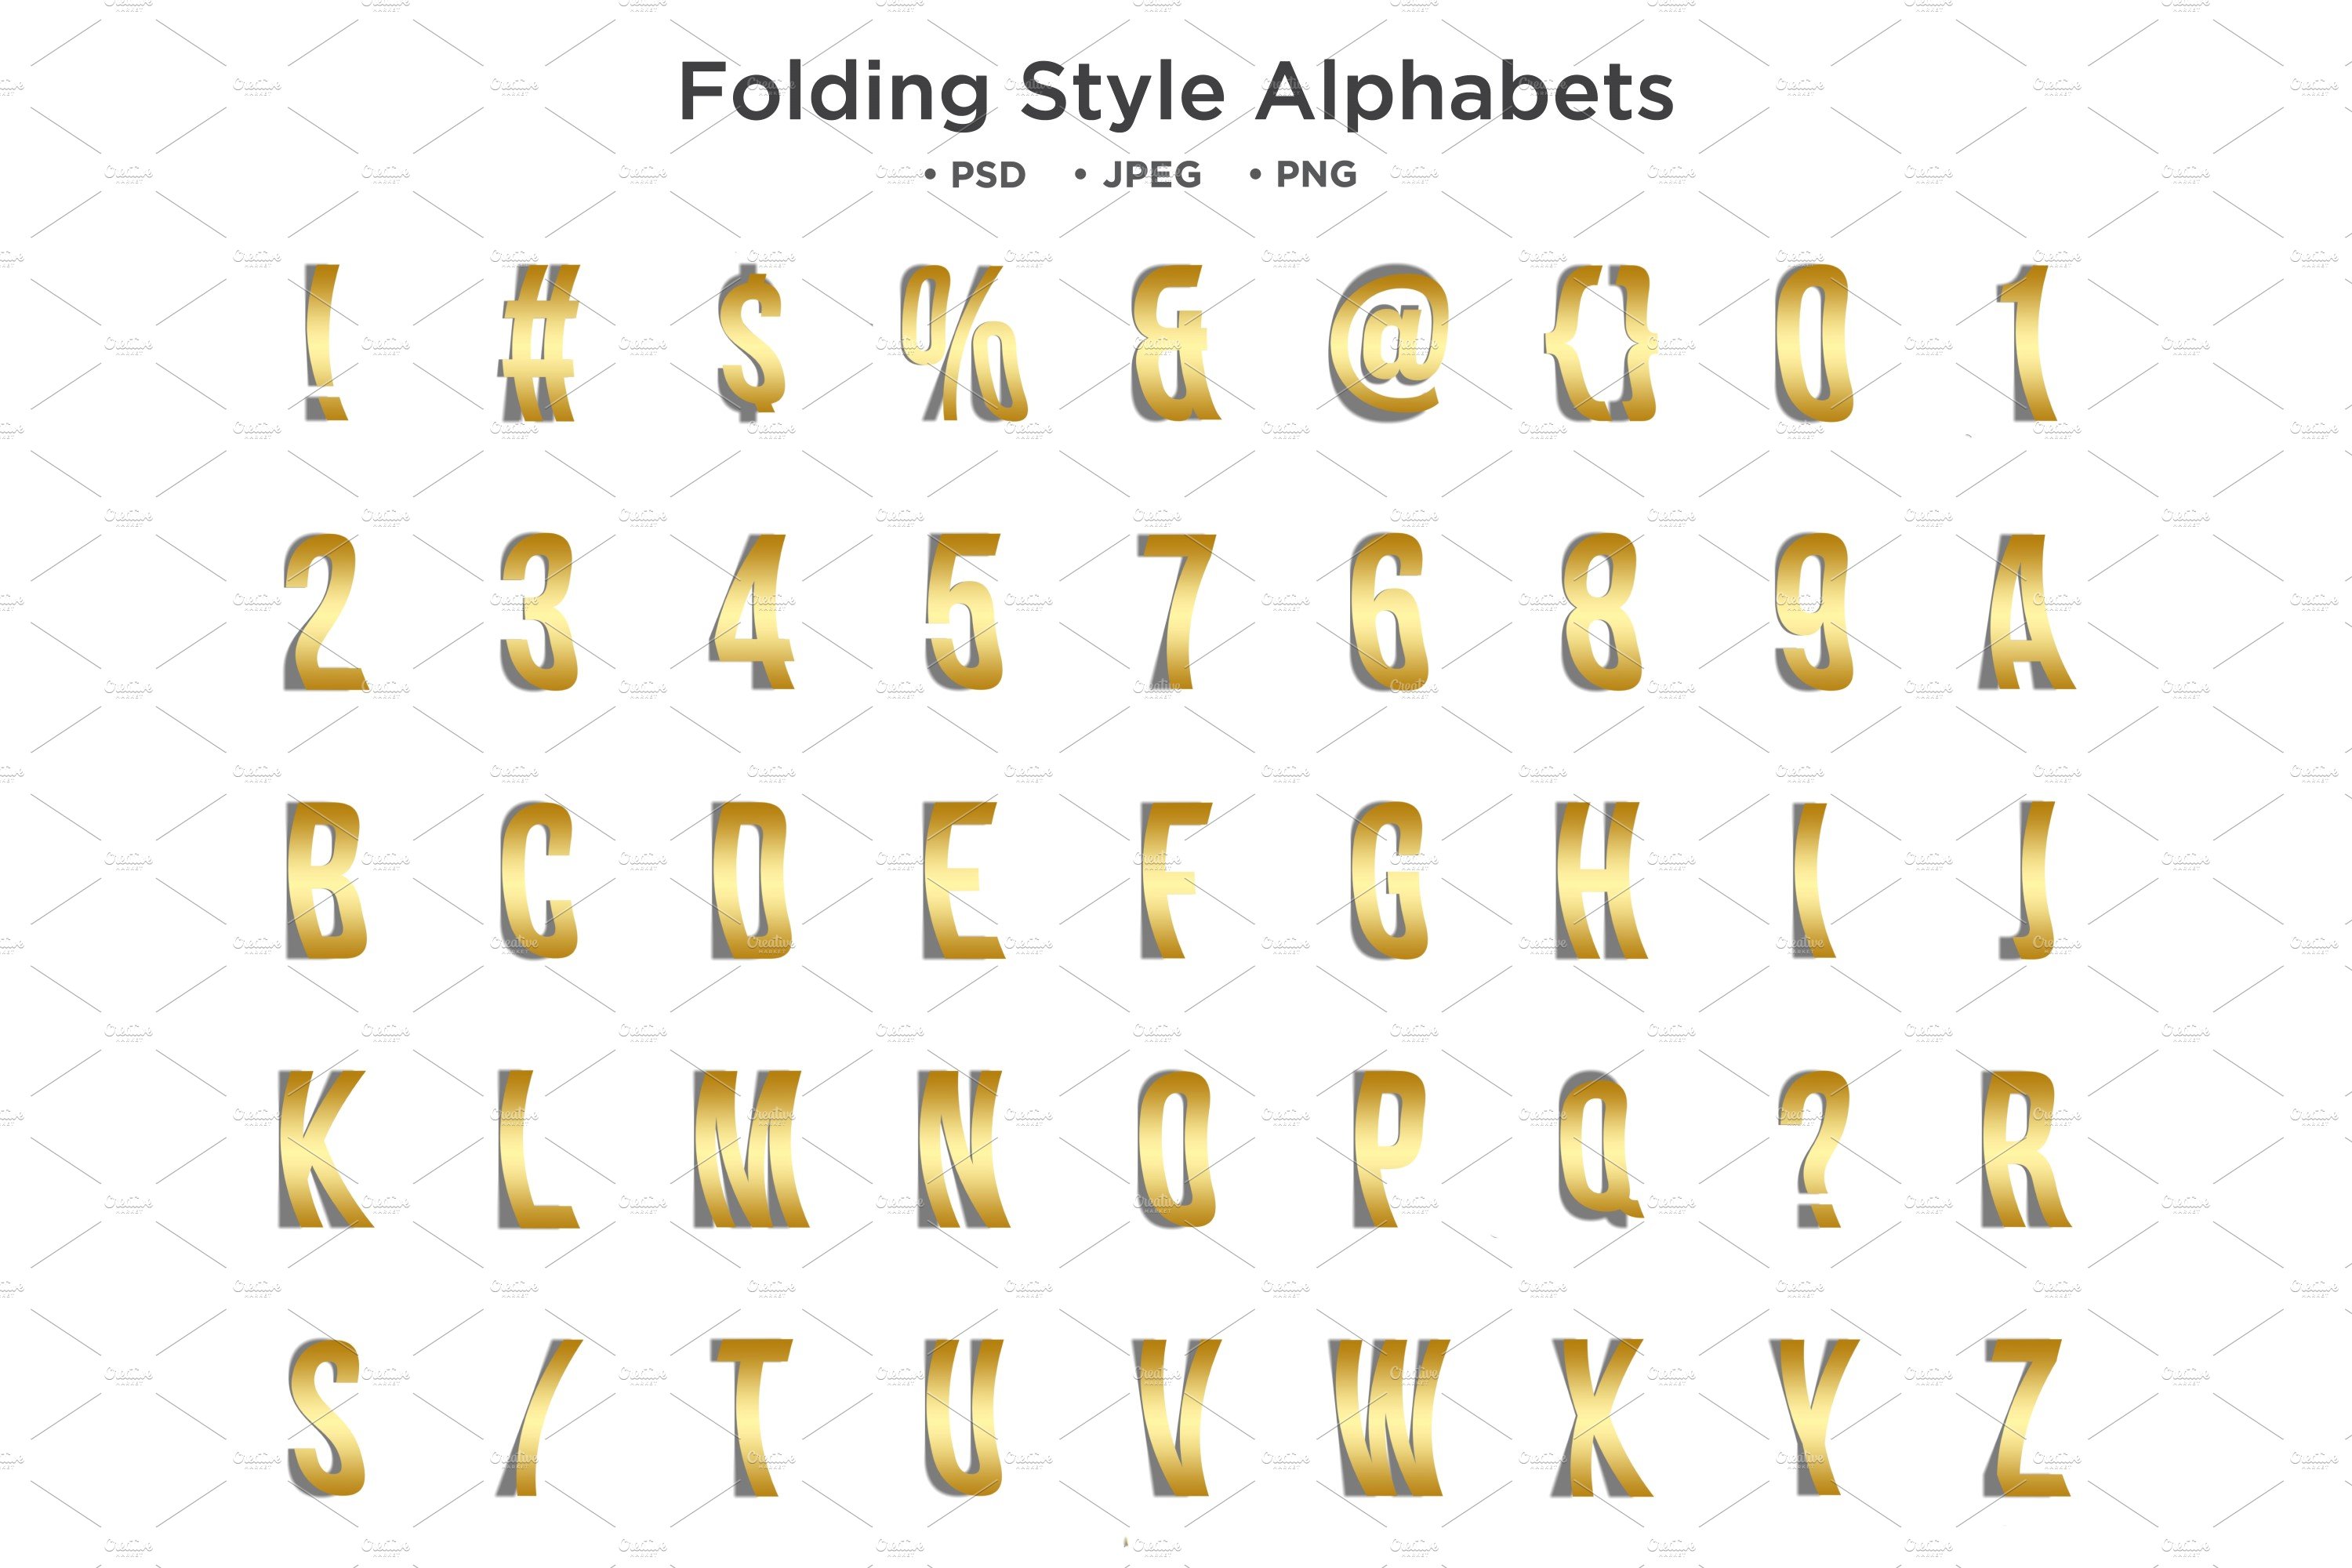 Folding Style Alphabet, Typographycover image.